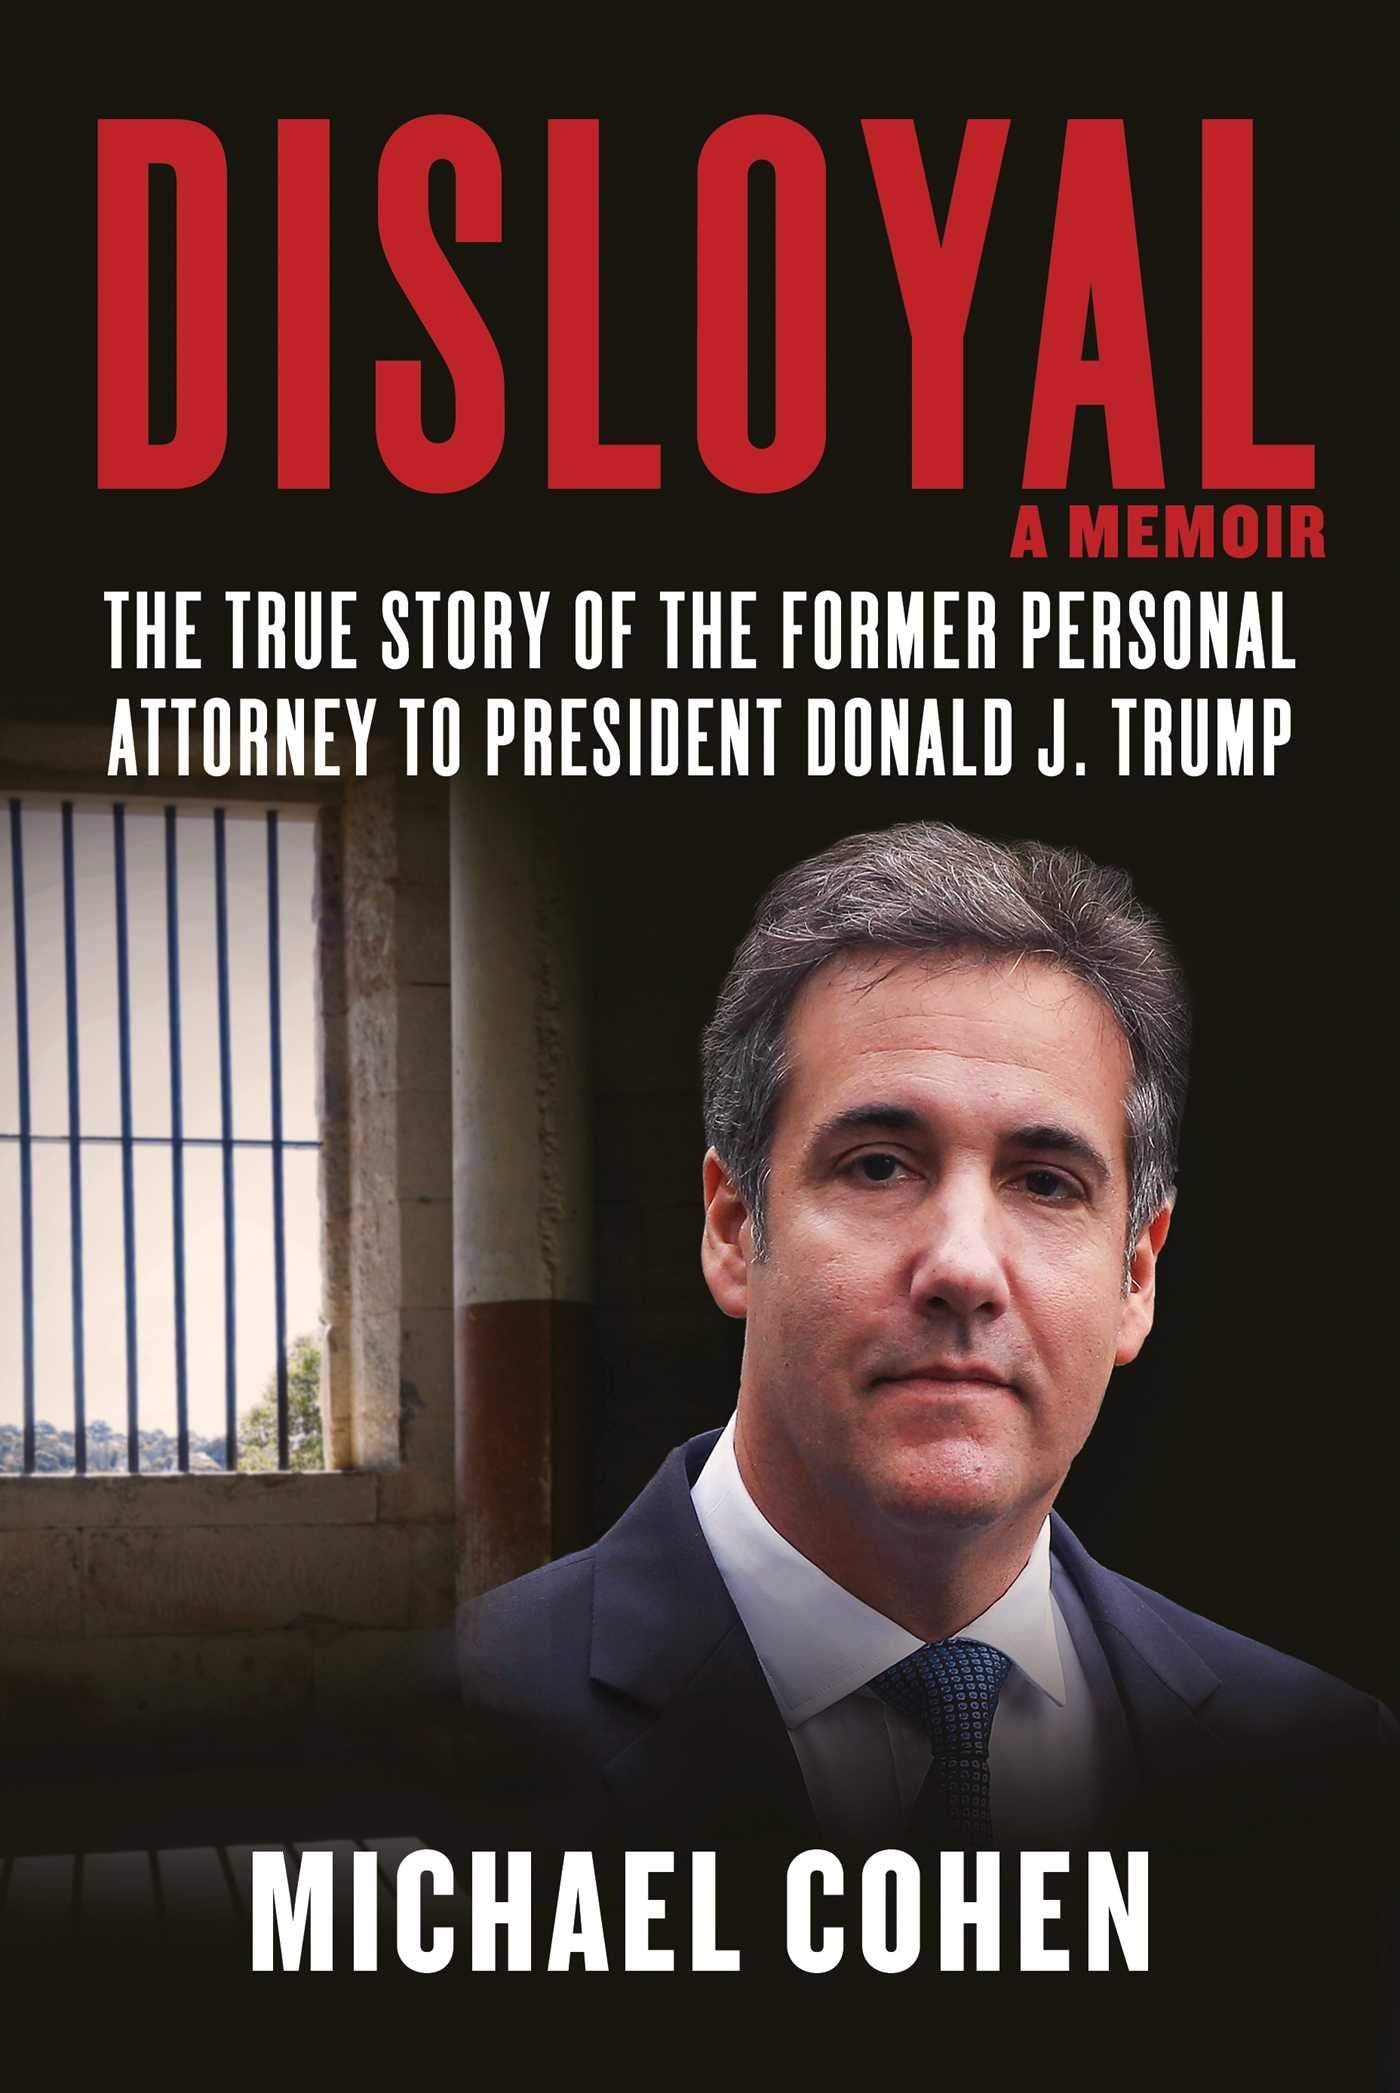 Disloyal: A Memoir by Michael Cohen